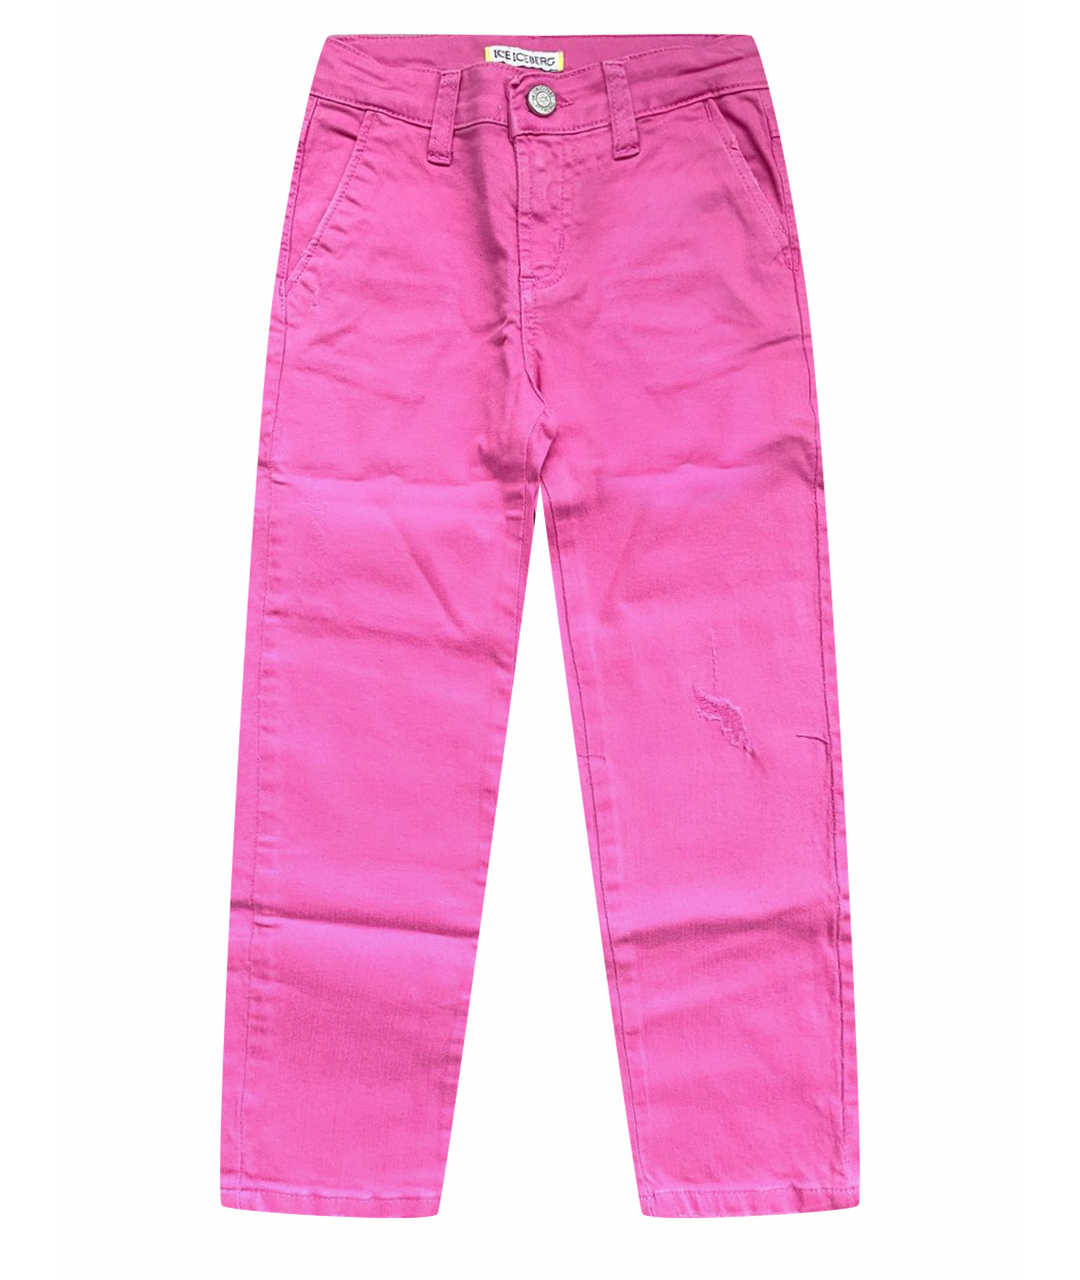 ICEBERG Розовые хлопковые детские джинсы, фото 1